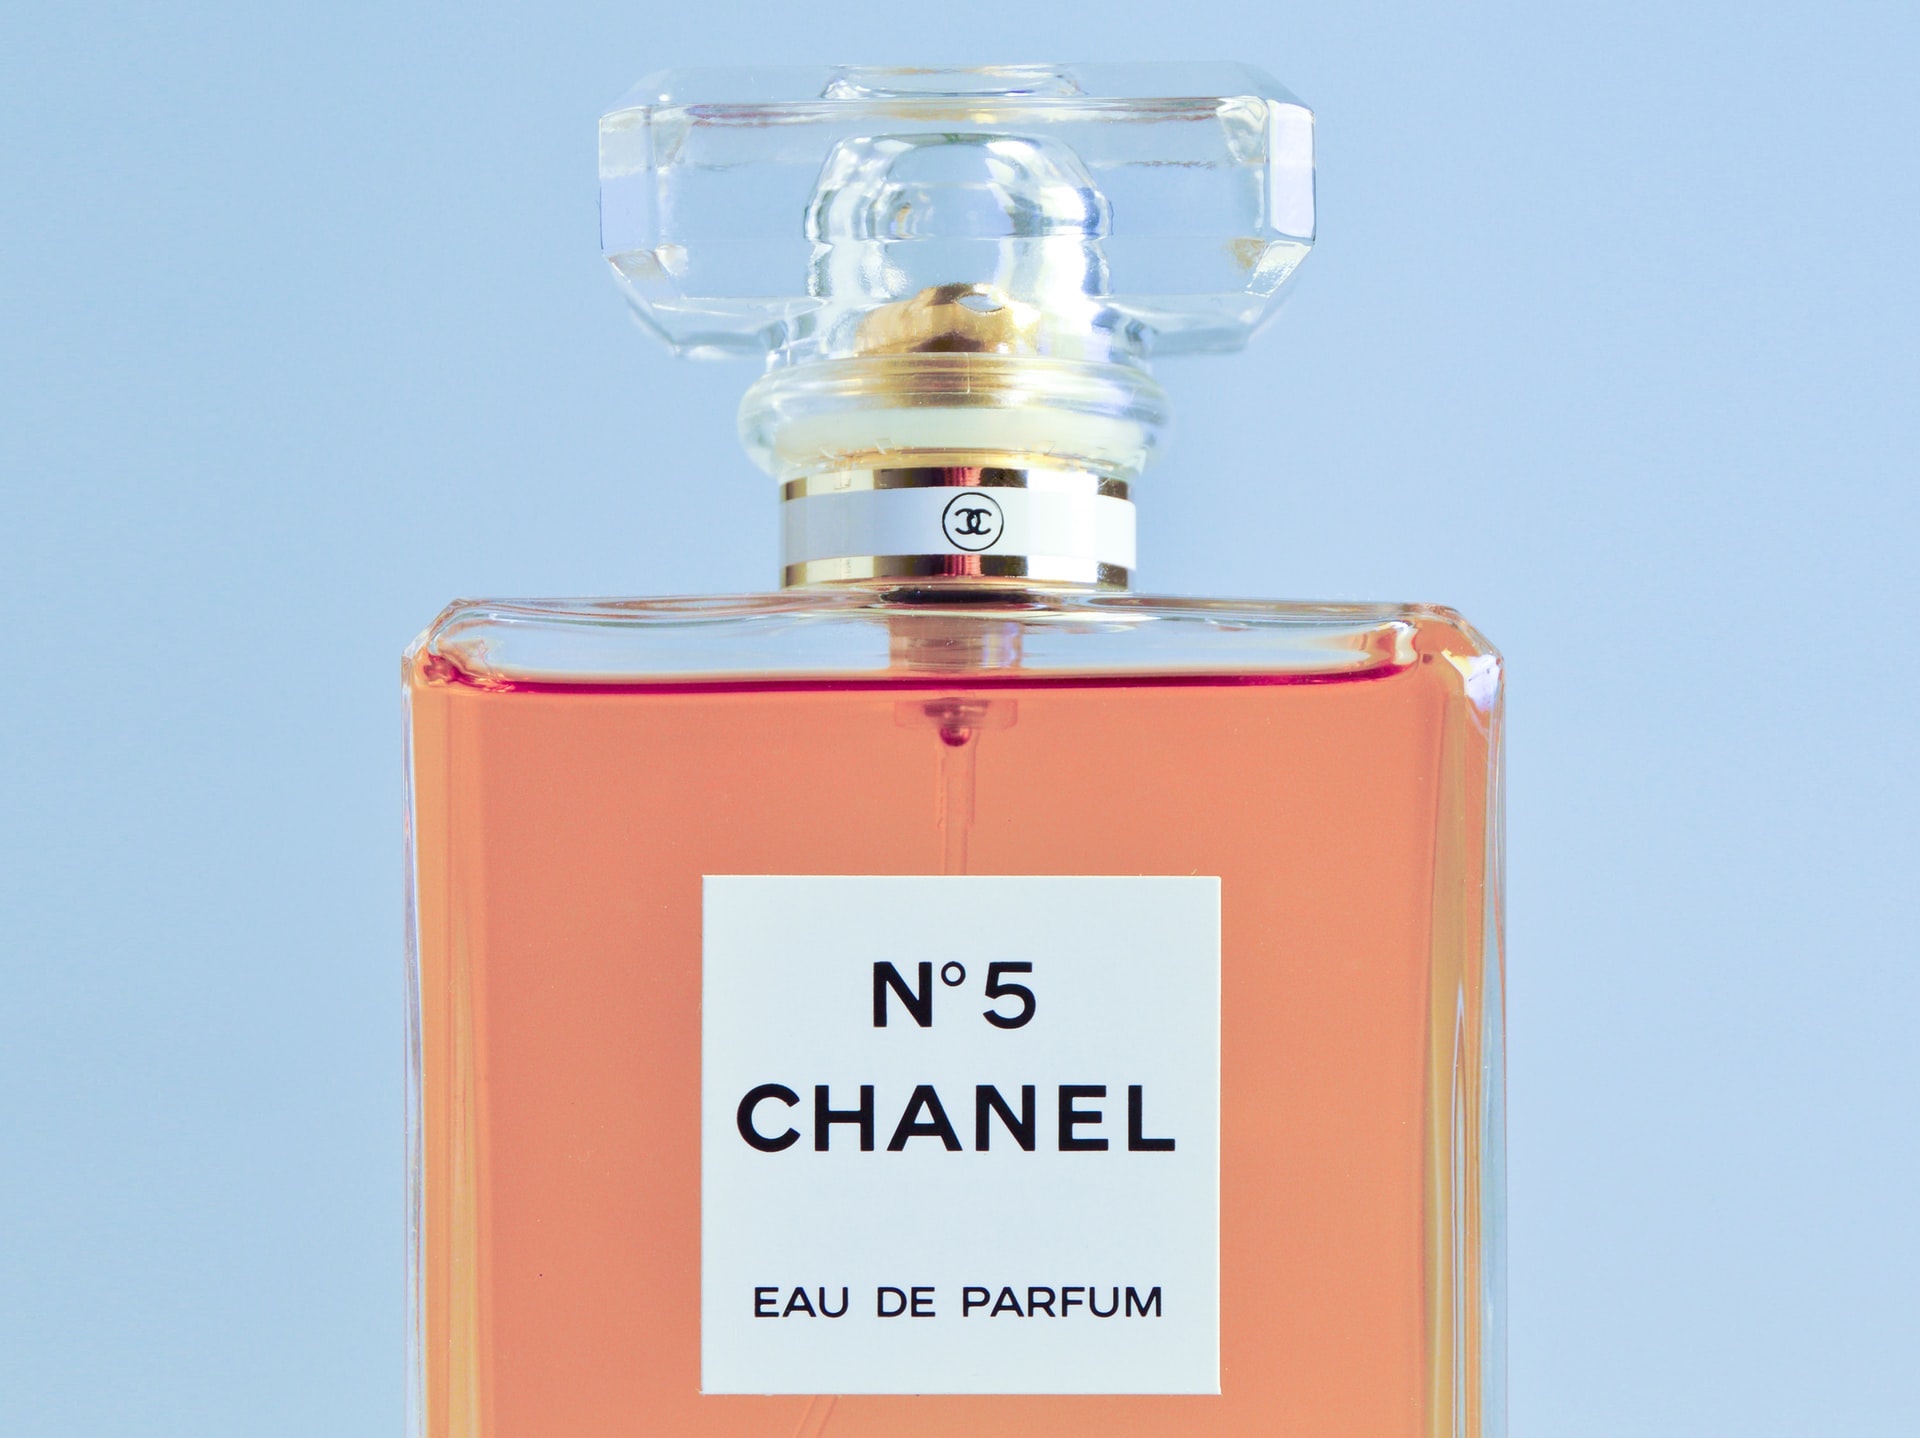 Acostumbrarse a por favor confirmar depositar Coco Chanel perfume: la historia tras el aroma más famoso de la historia